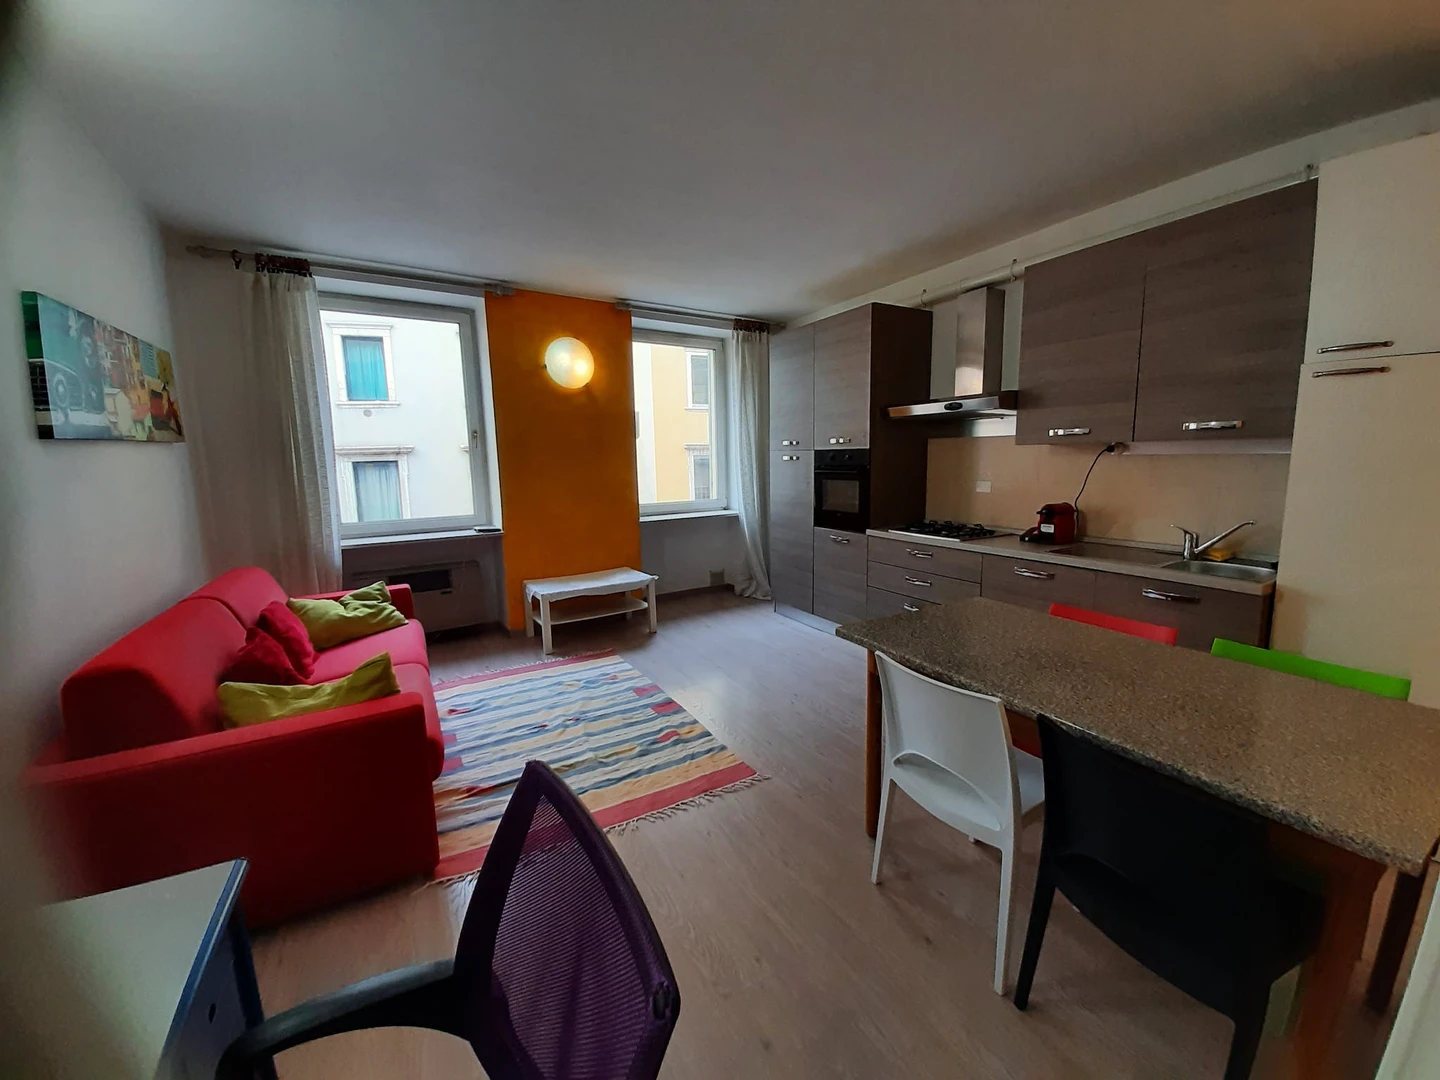 Apartamento totalmente mobilado em Trento